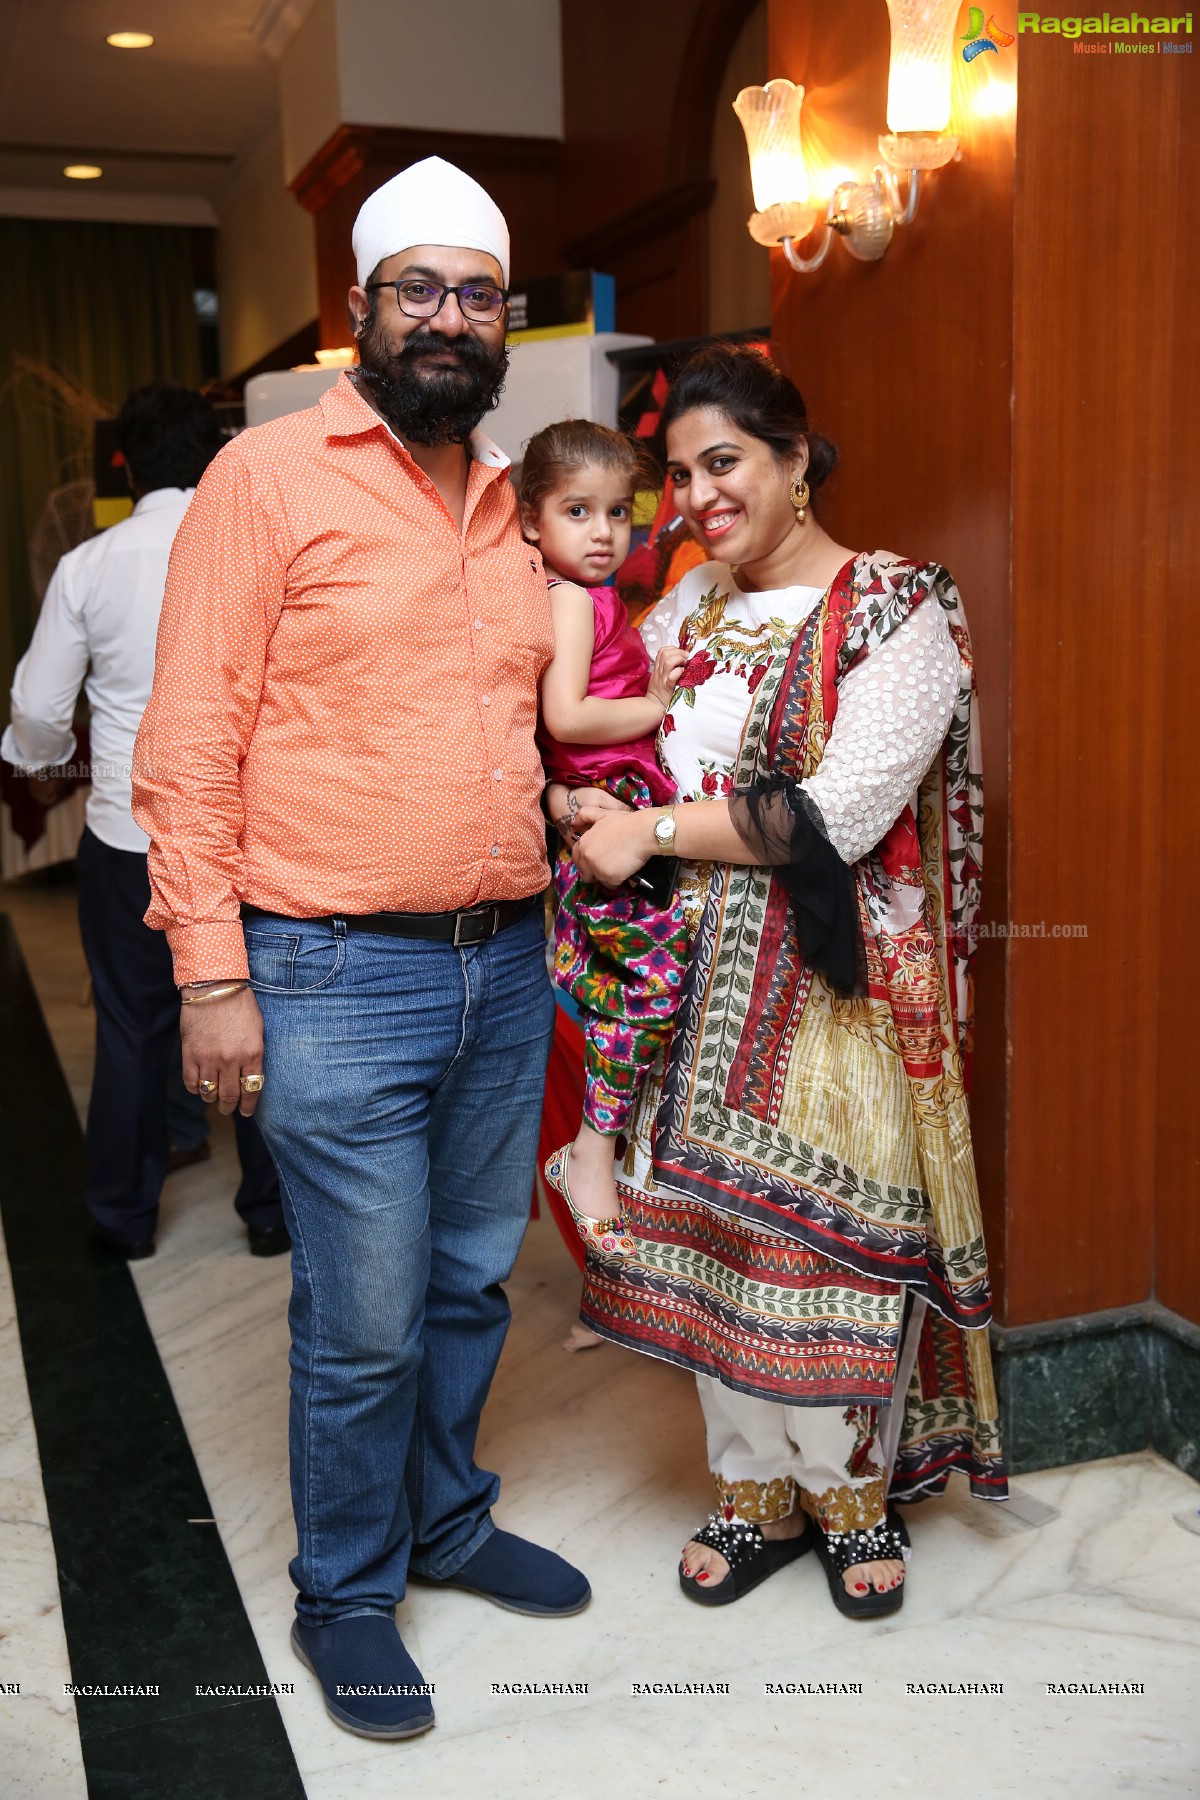 Baisakhi Celebrations by Surat Singh Malhotra & Community Members at Hotel Katriya